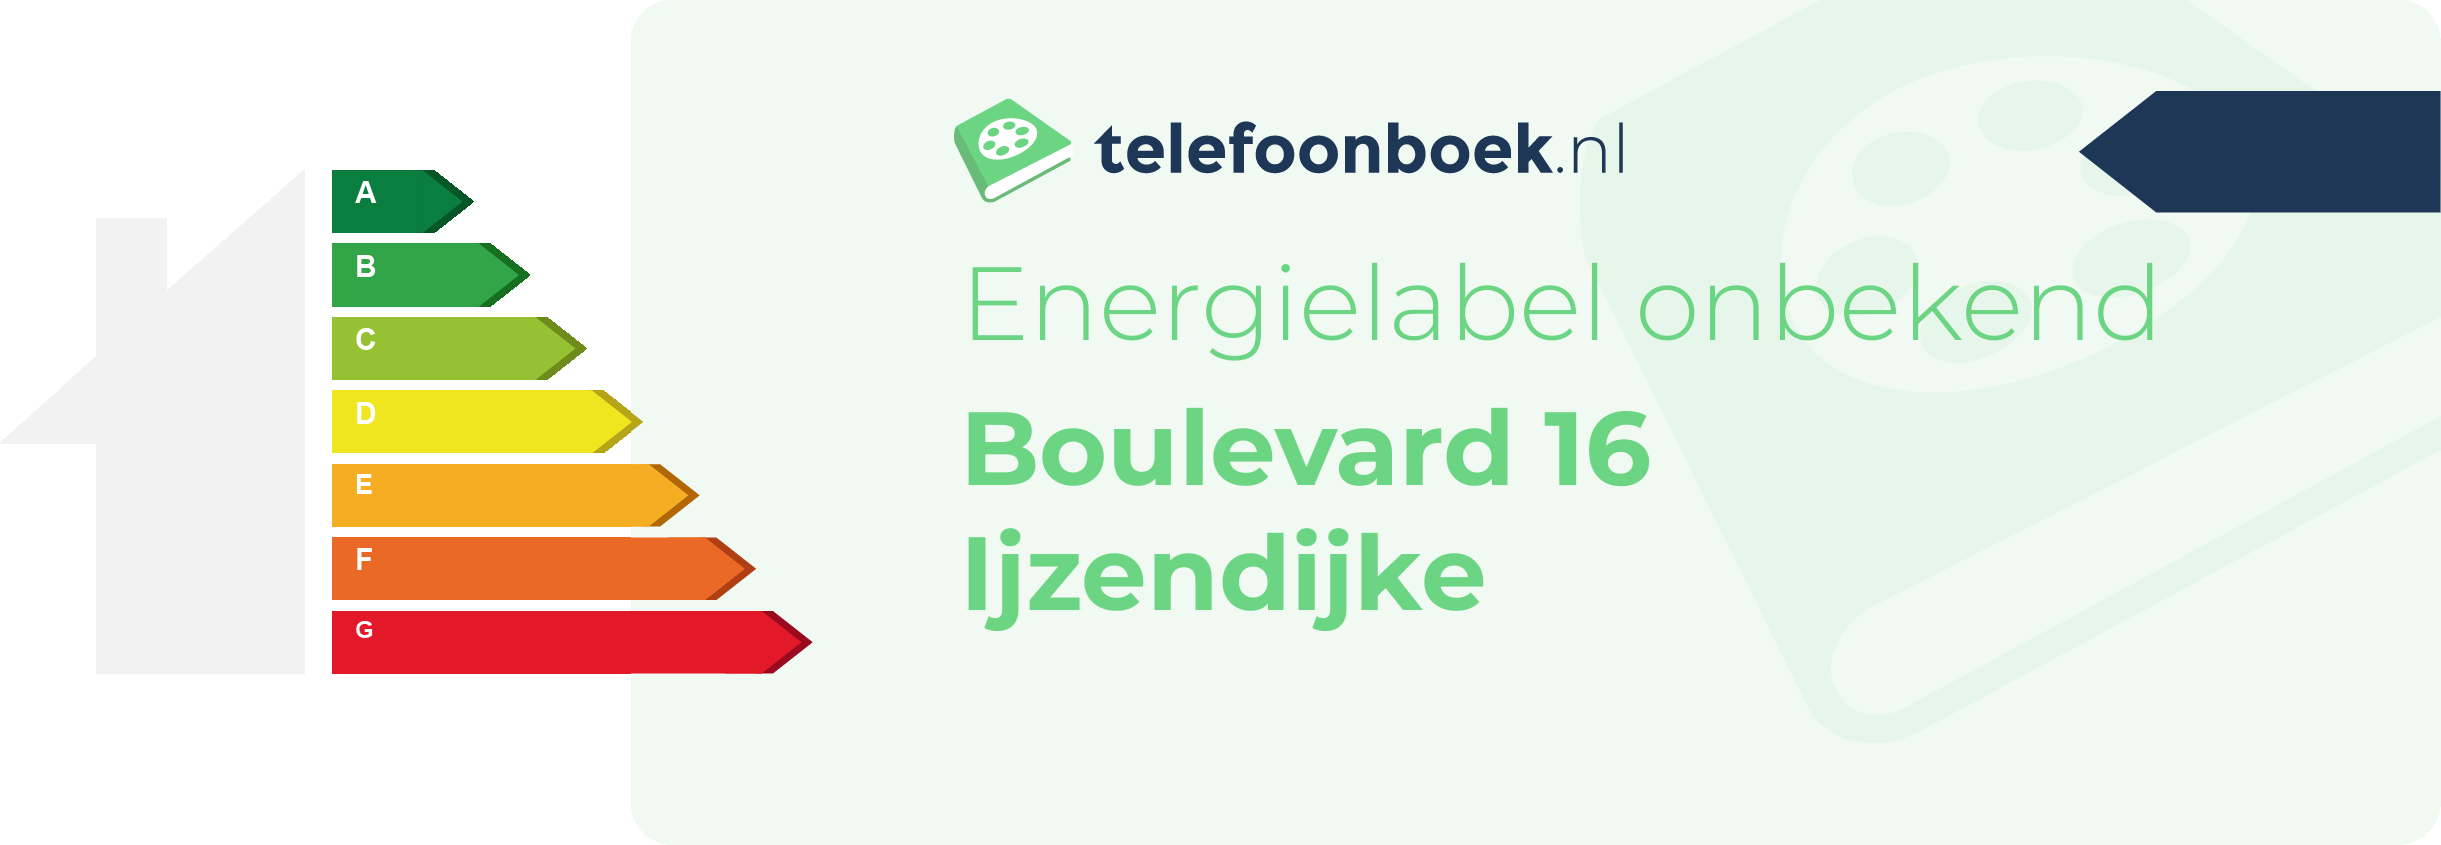 Energielabel Boulevard 16 Ijzendijke